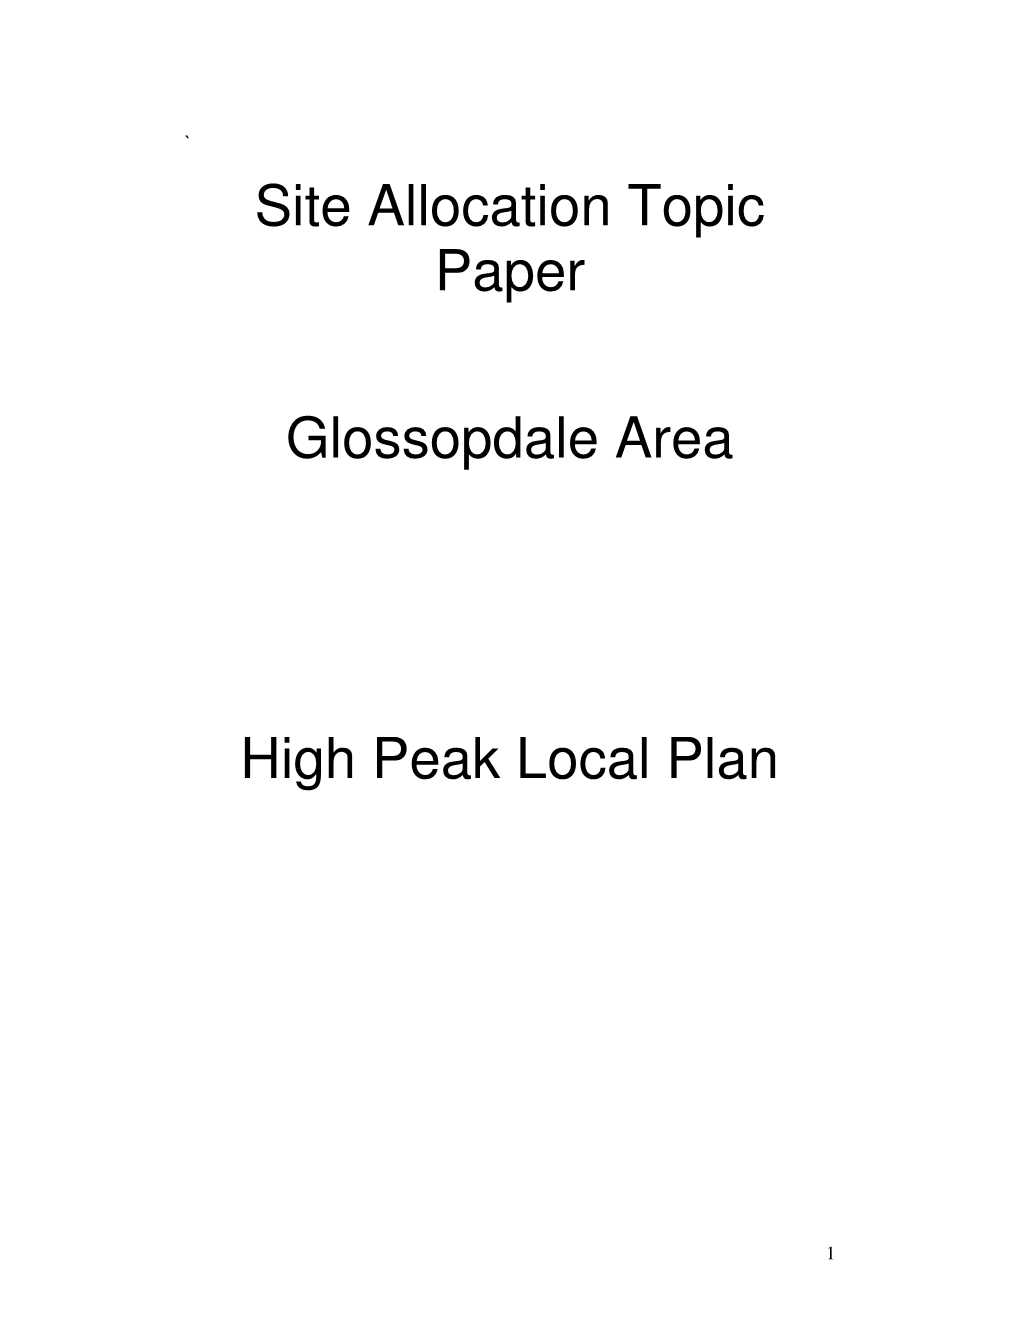 Site Allocation Topic Paper Glossopdale Area High Peak Local